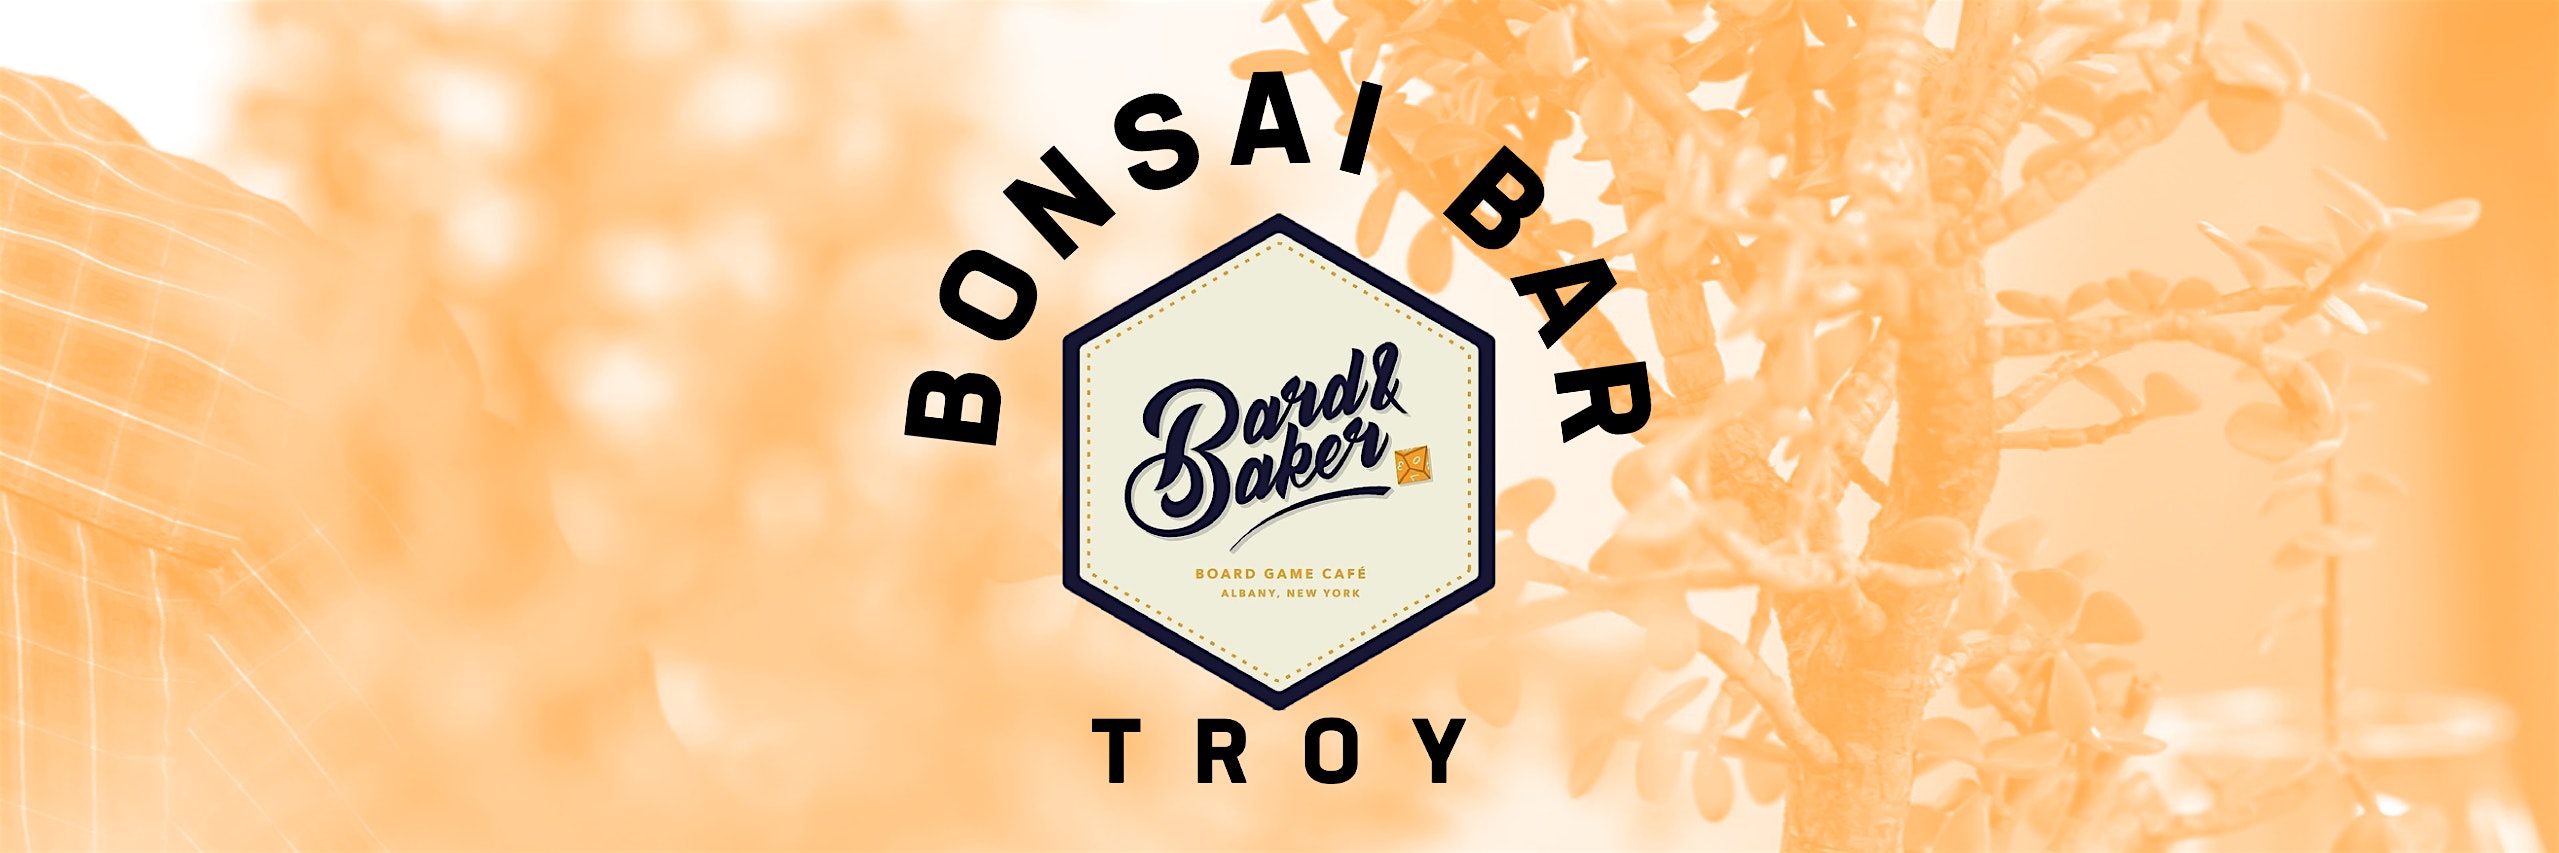 Bonsai Bar @ Bard & Baker: Board Game Café – Troy